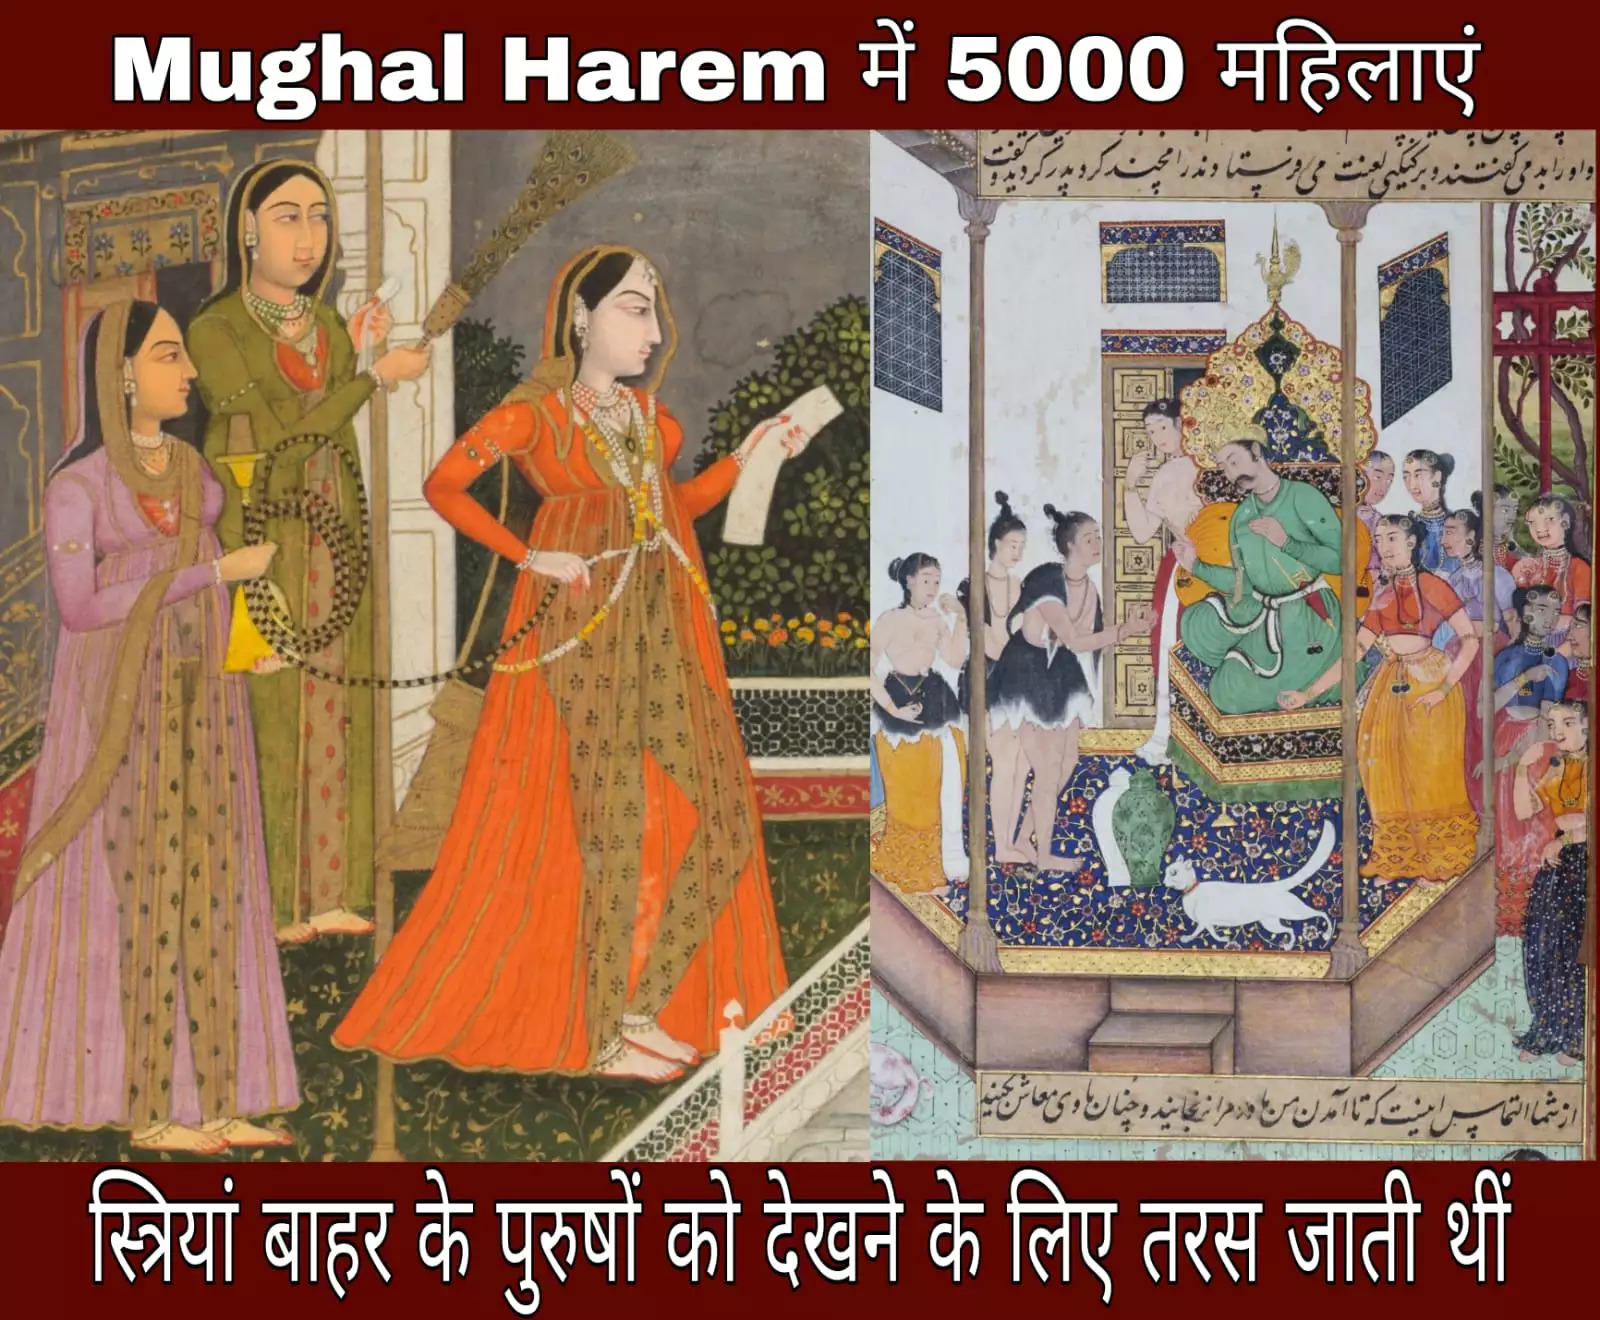 Mughal Harem: मुगल शासक संबंध बनाने के लिए रखते थे 5000 औरतें, ऐसी होती थी रंगीन रातें